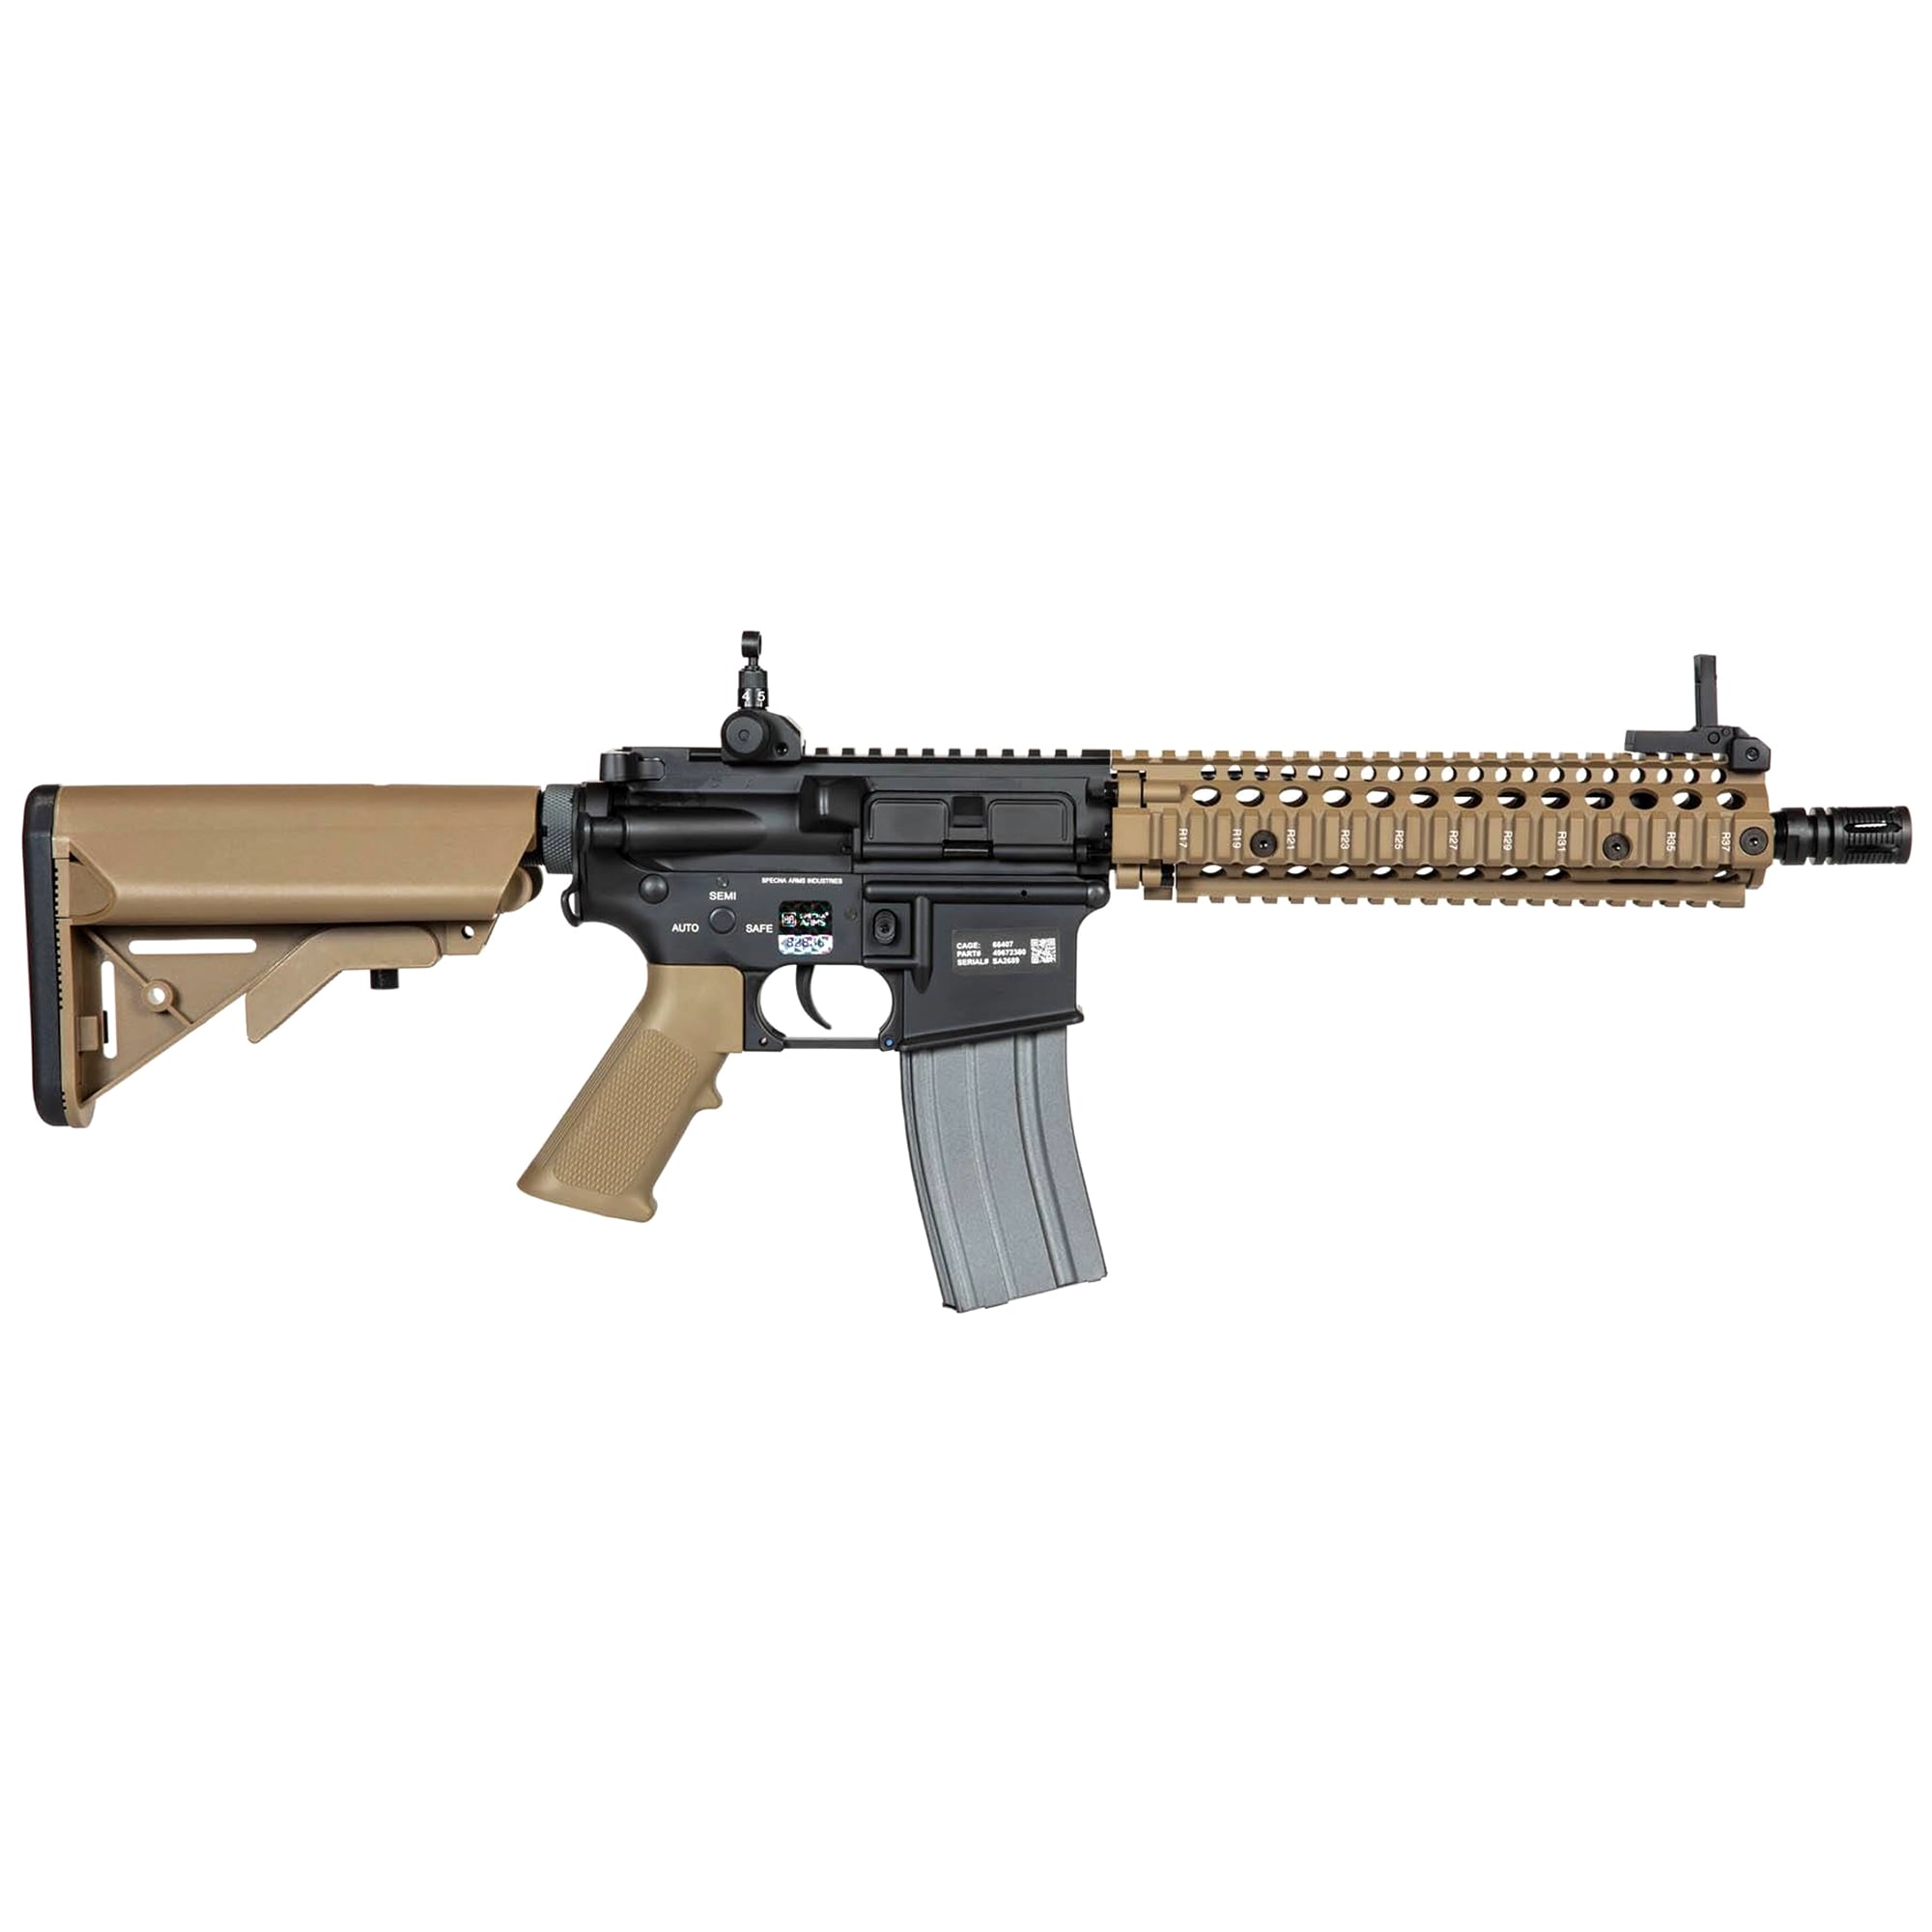 AEG Specna Arms SA-A03 SAEC System Assault Carbine - Half-Tan